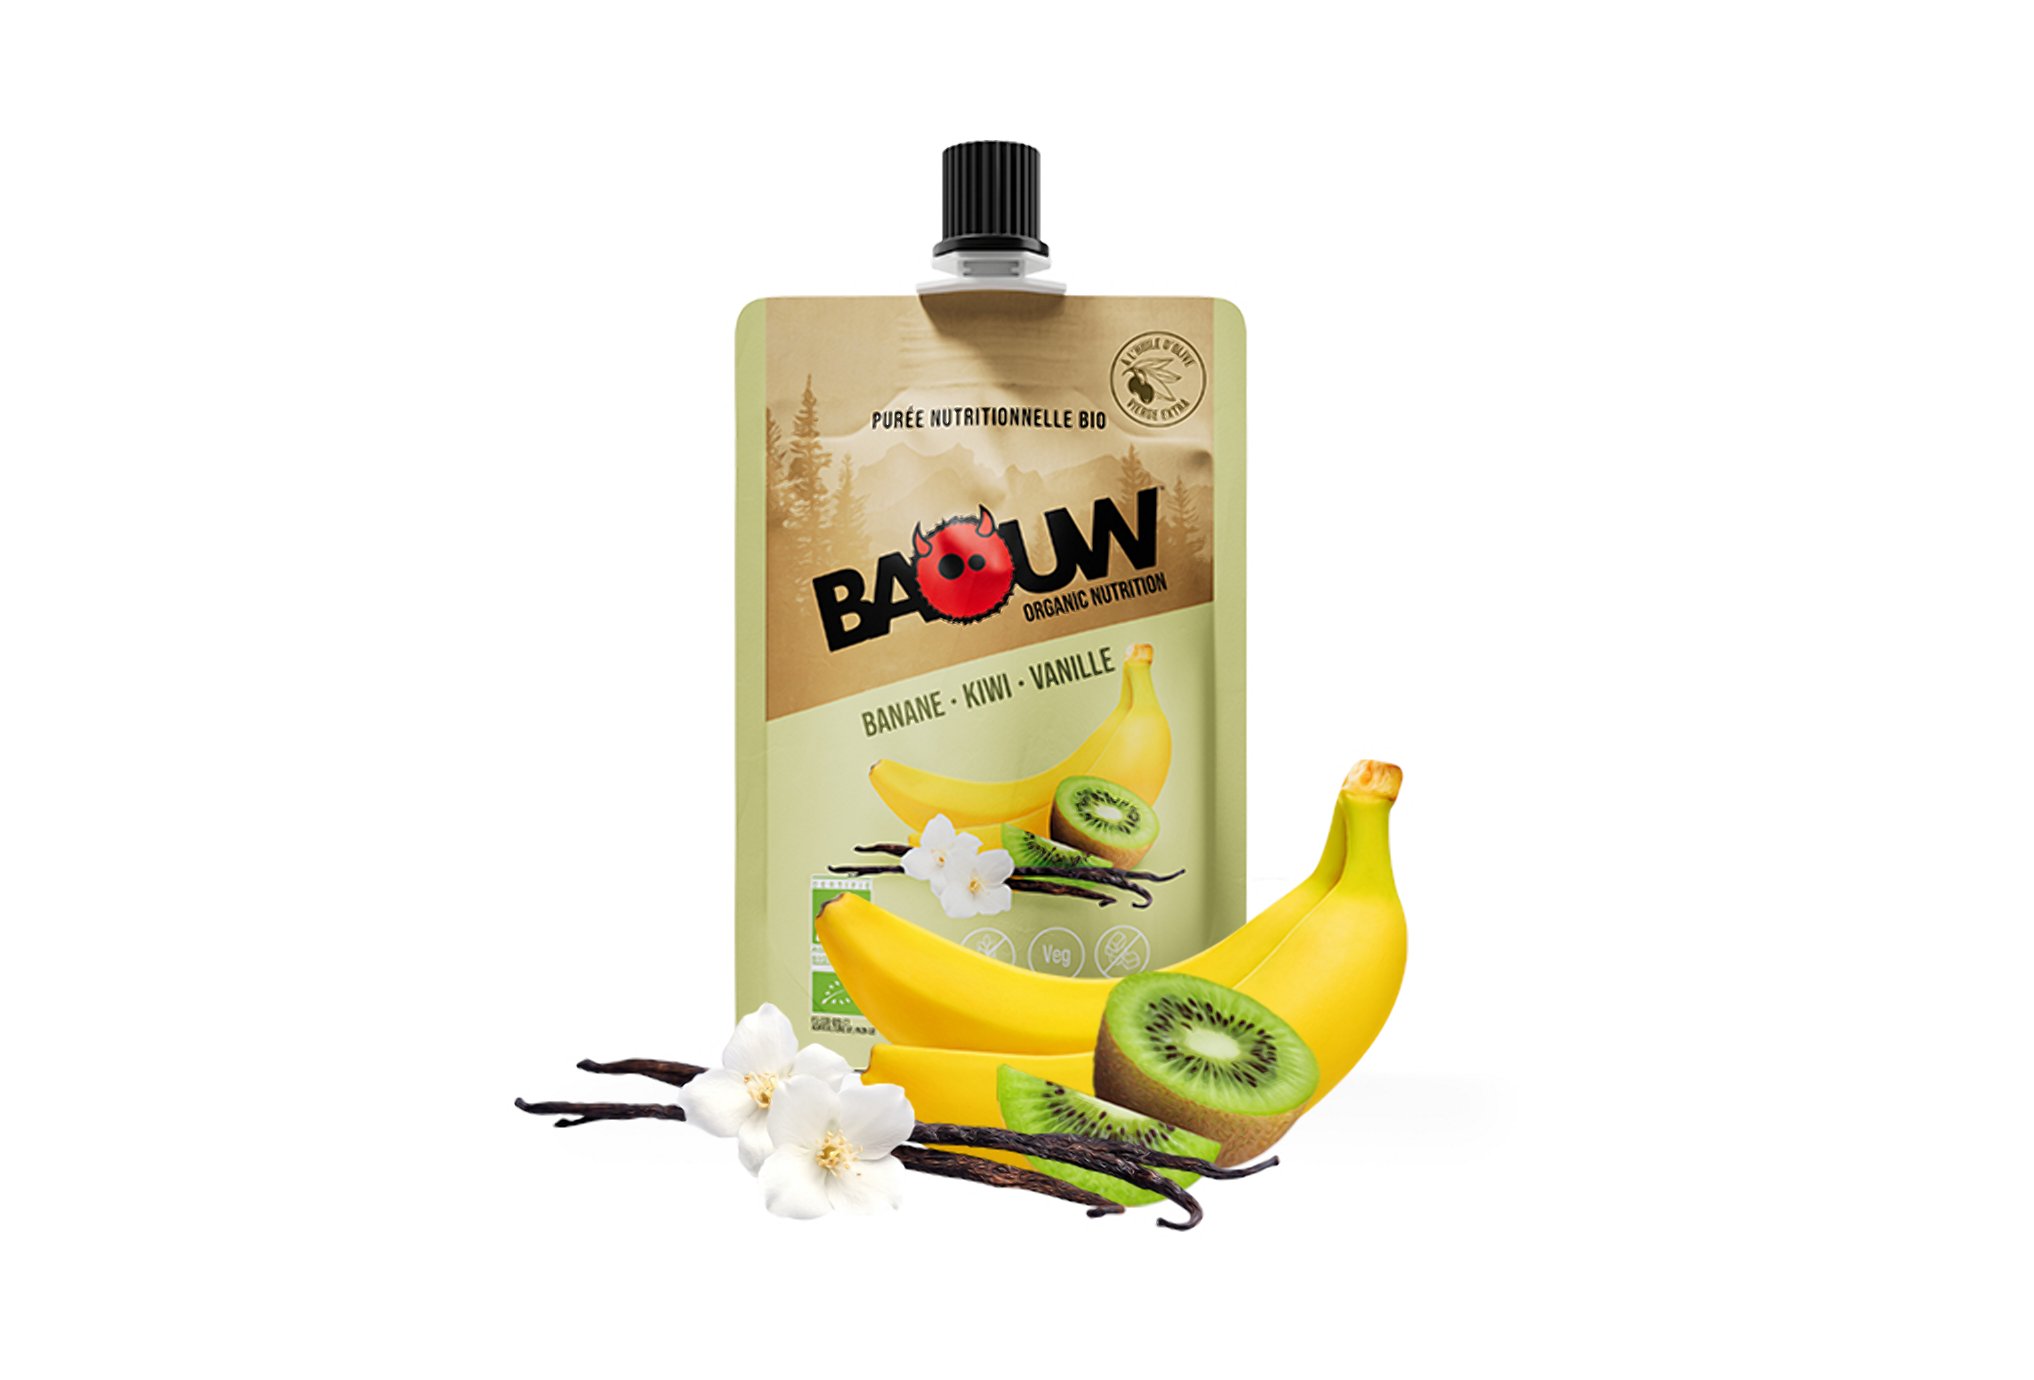 Baouw Purée nutritionnelle bio - Banane - Kiwi - Vanille Diététique $scat.CAT_NOM